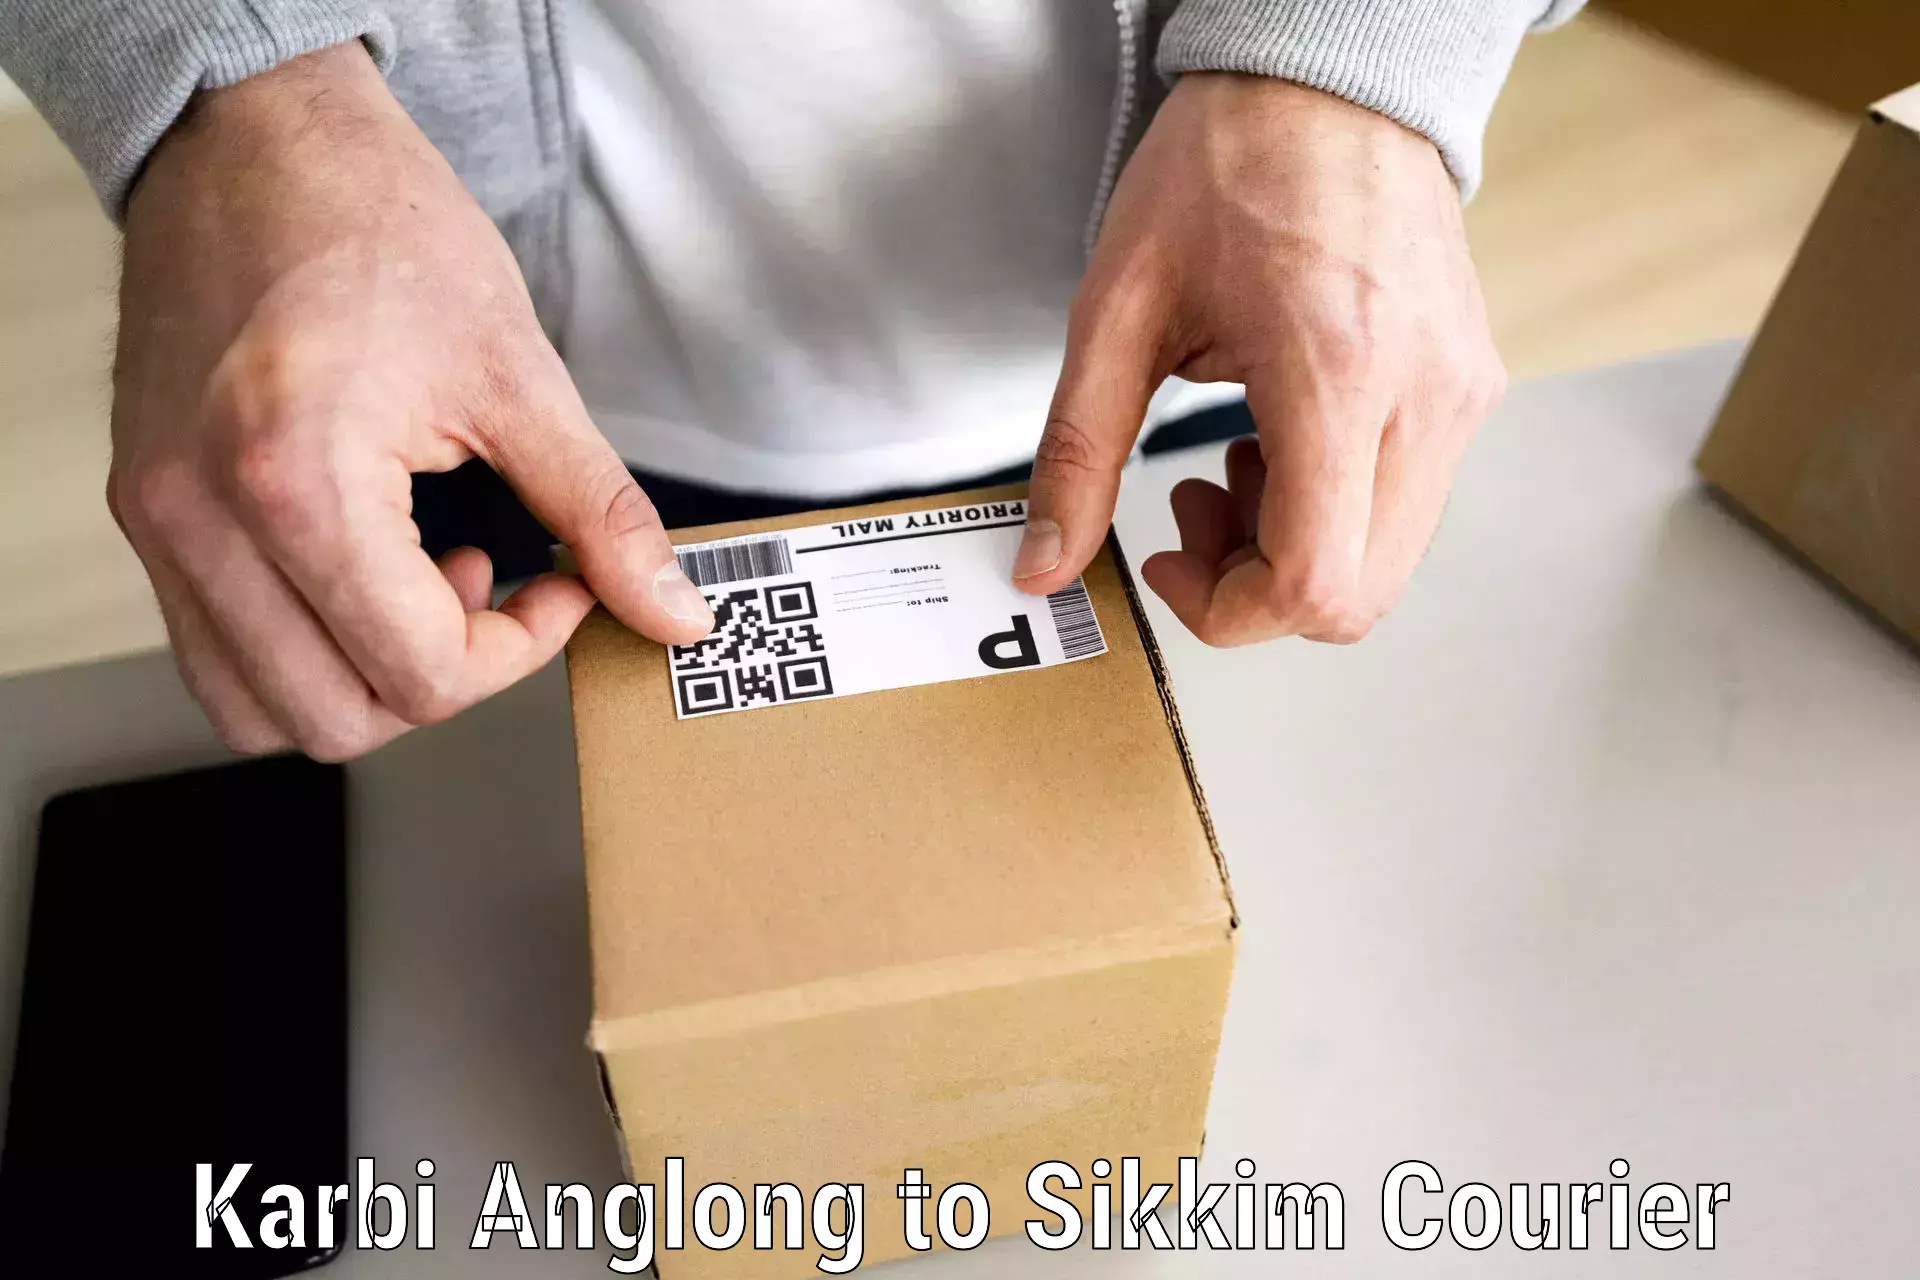 Seamless moving process Karbi Anglong to Gangtok